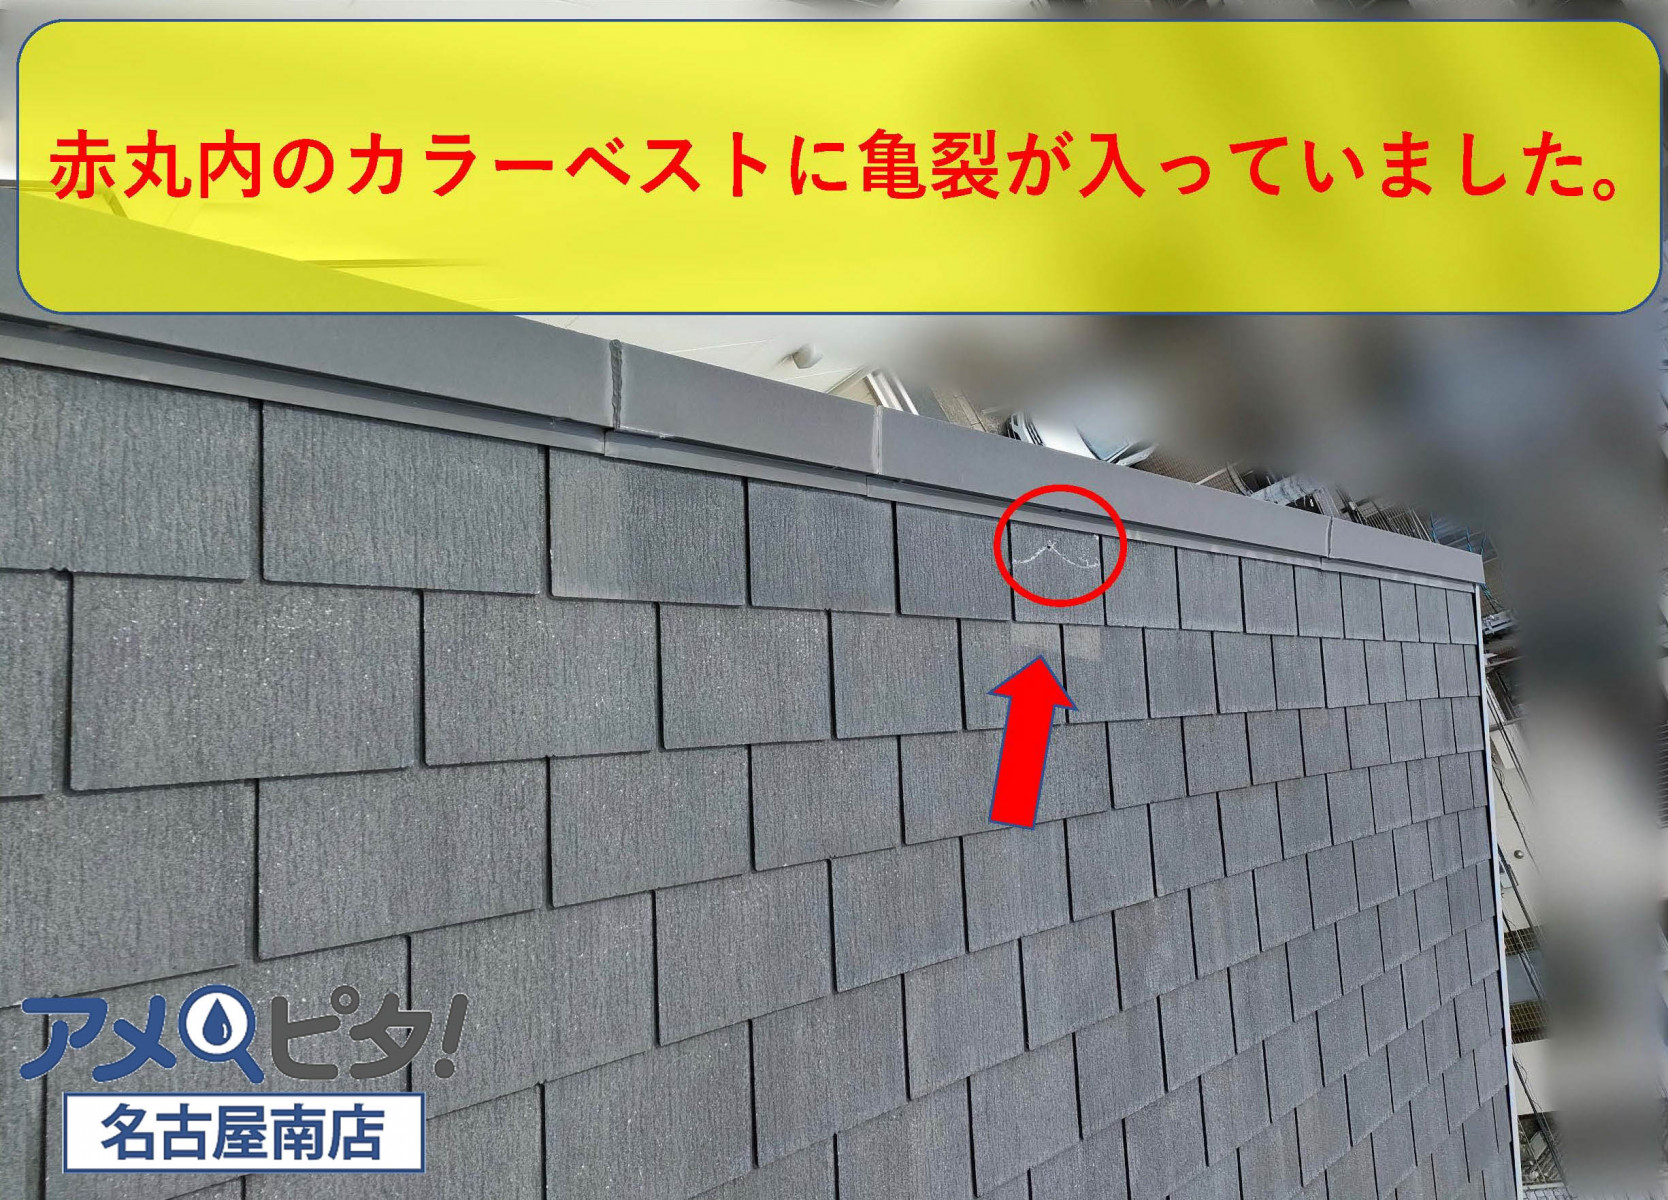 名古屋市瑞穂区にて屋根材カラーベストが破損していたので雨漏りの調査と屋根の点検